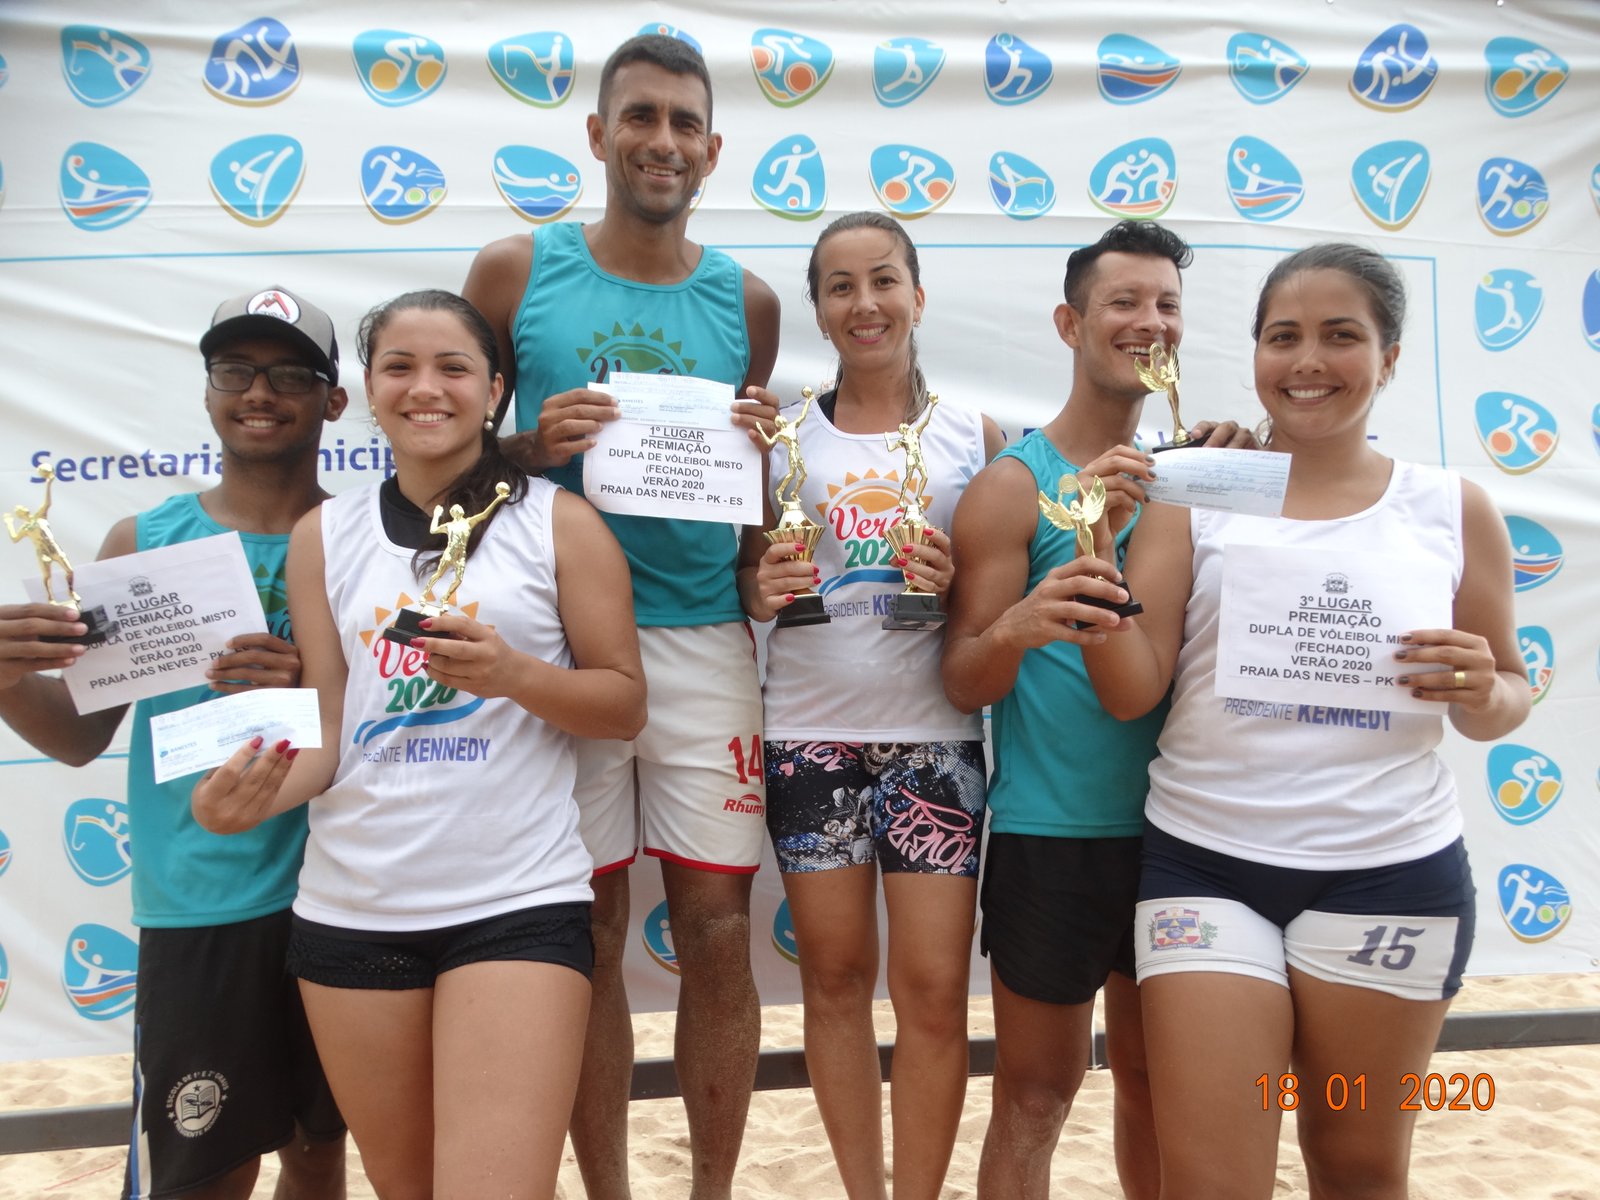 NOTÍCIA: Vencedores do torneio de vôlei - Verão 2020